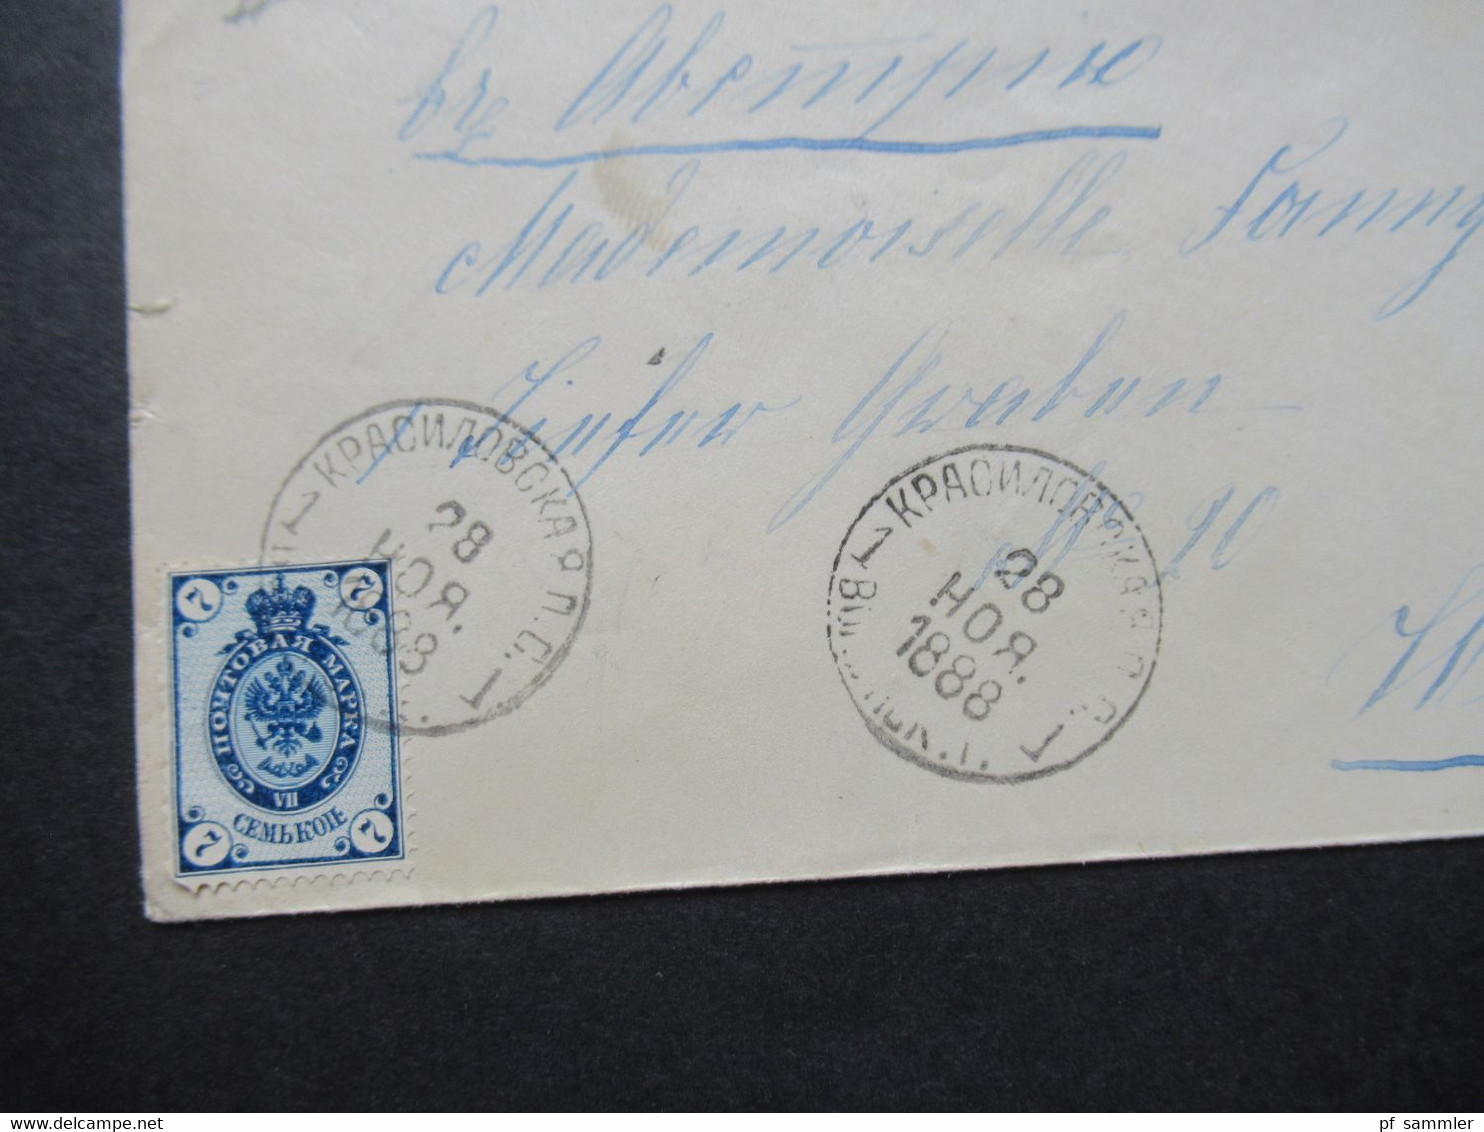 Russland 1888 Kleiner Umschlag Mit Zwei Stempeln Und Michel Nr.33 Auslandsbrief Nach Wien Gesendet - Storia Postale